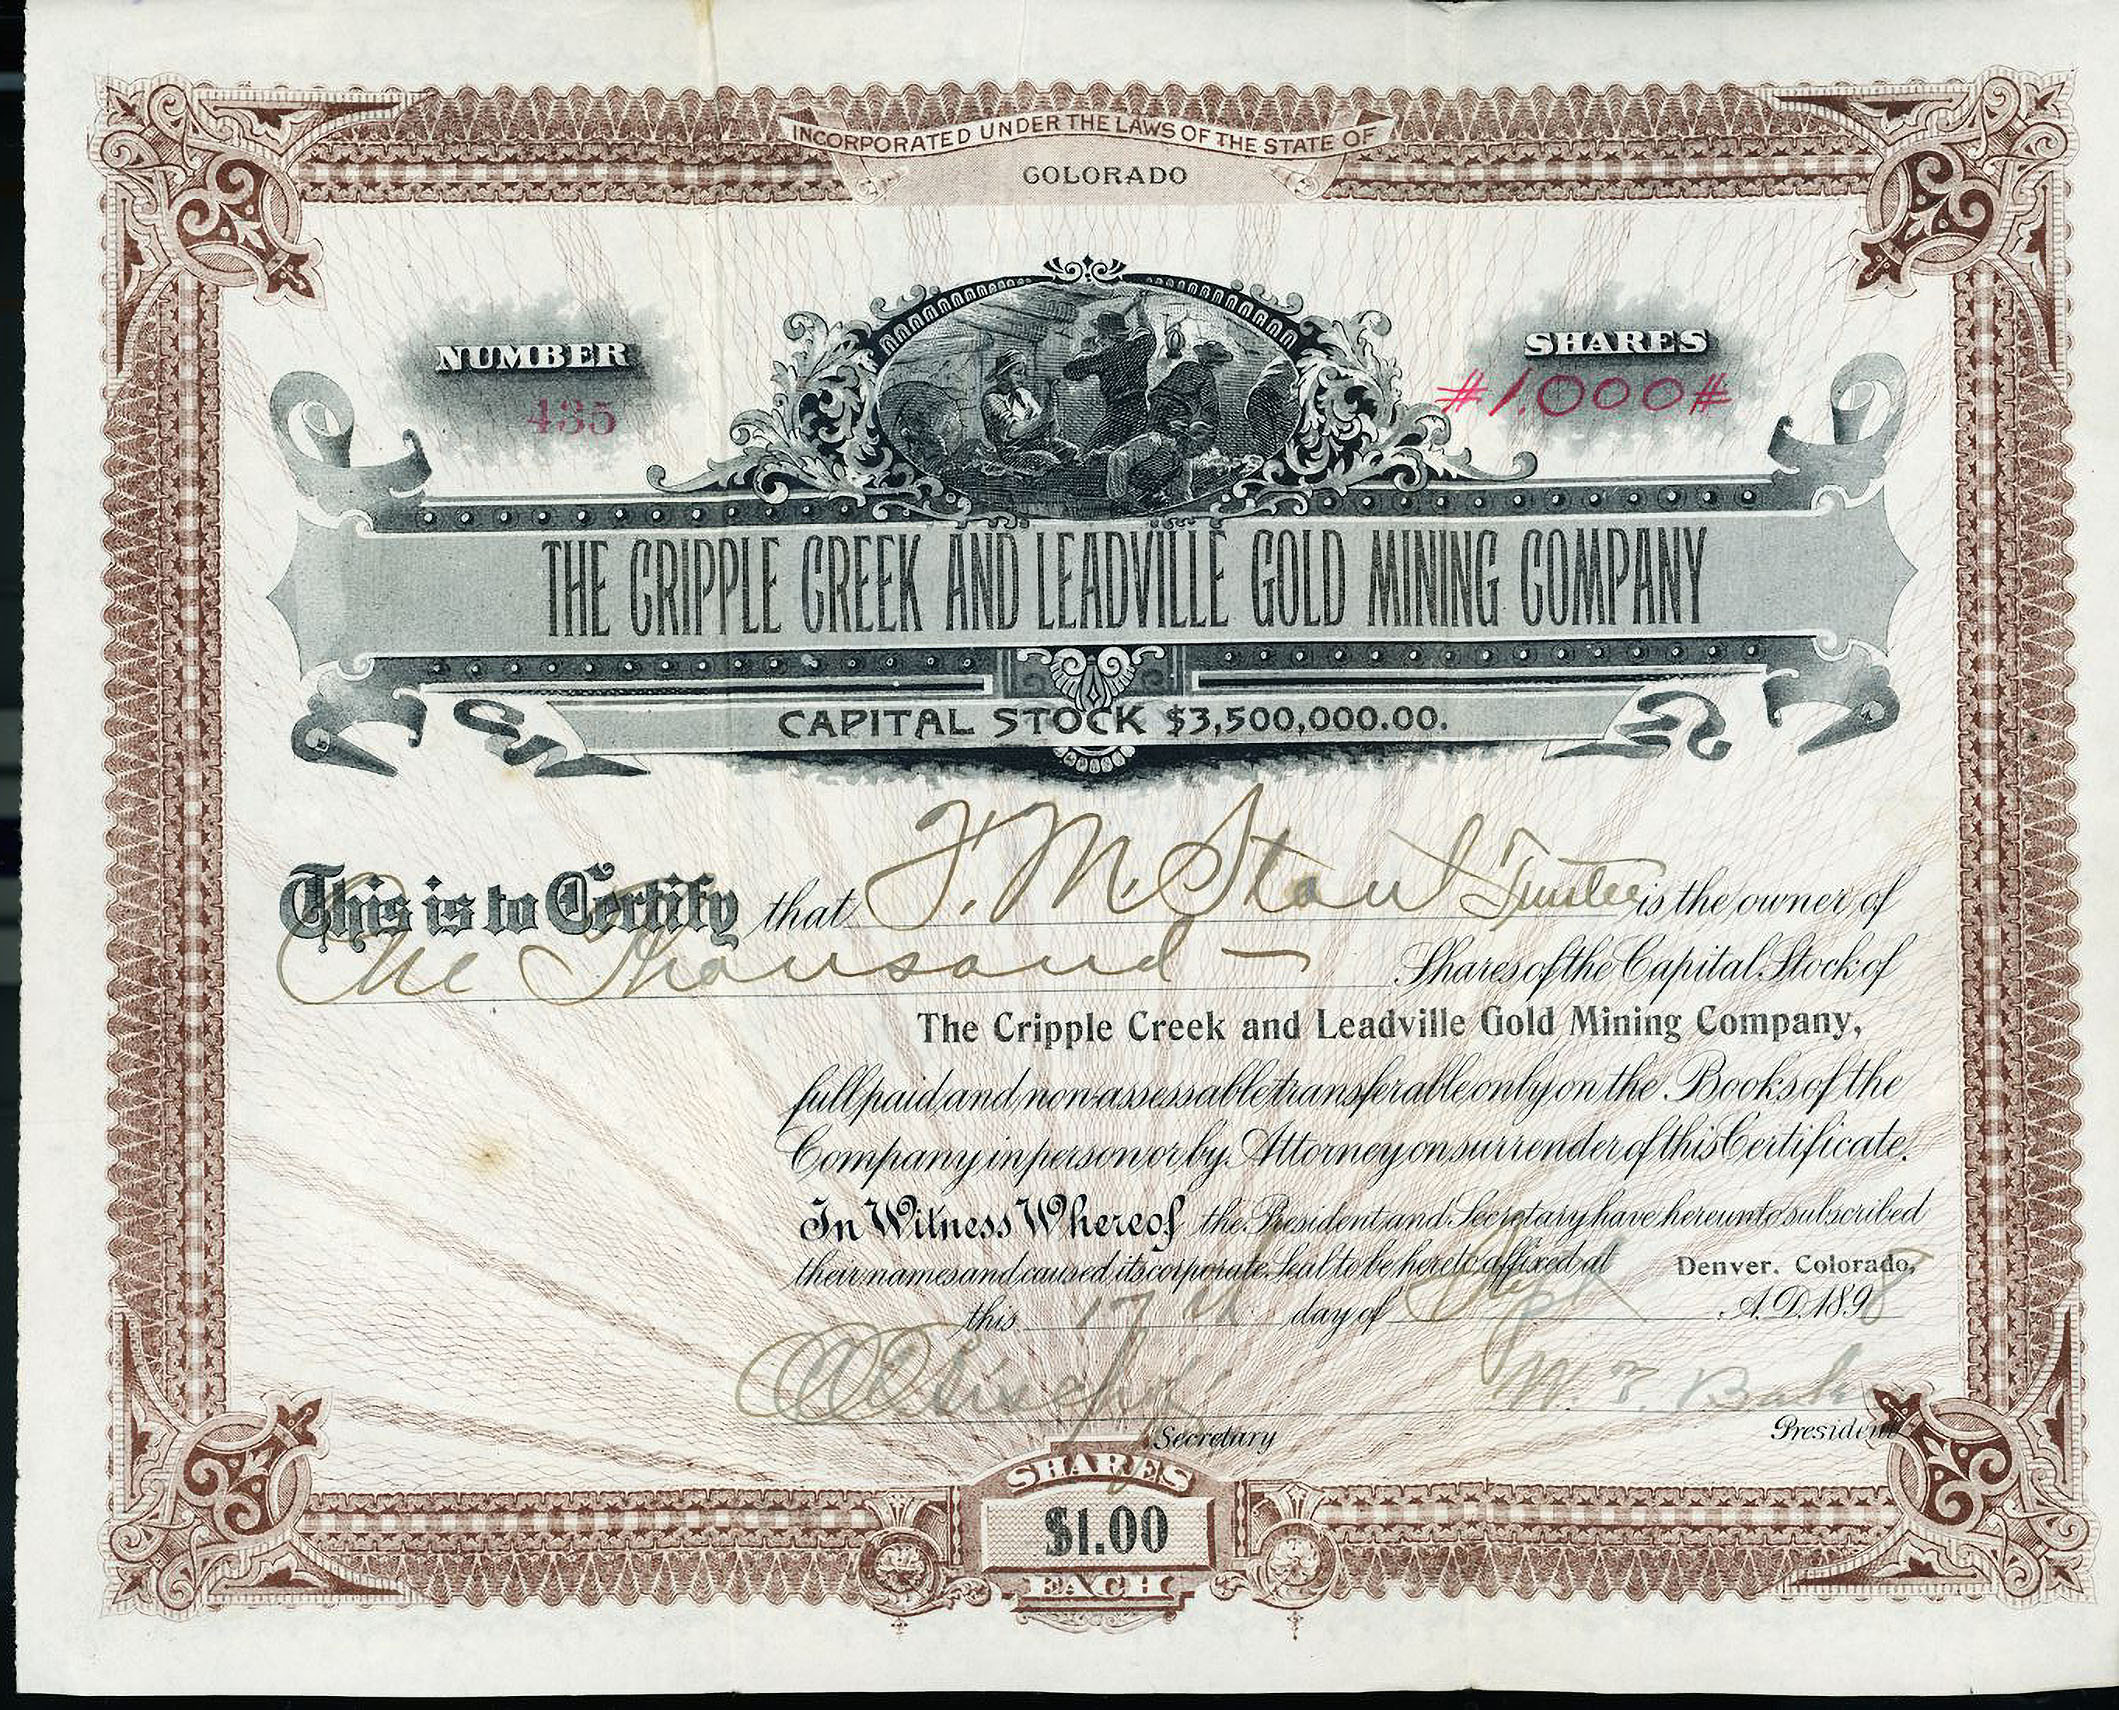 CRIPPLE CREEK & LEADVILLE GOLD MINING COMPANY stock certificate & prospectus COLORADO 1898